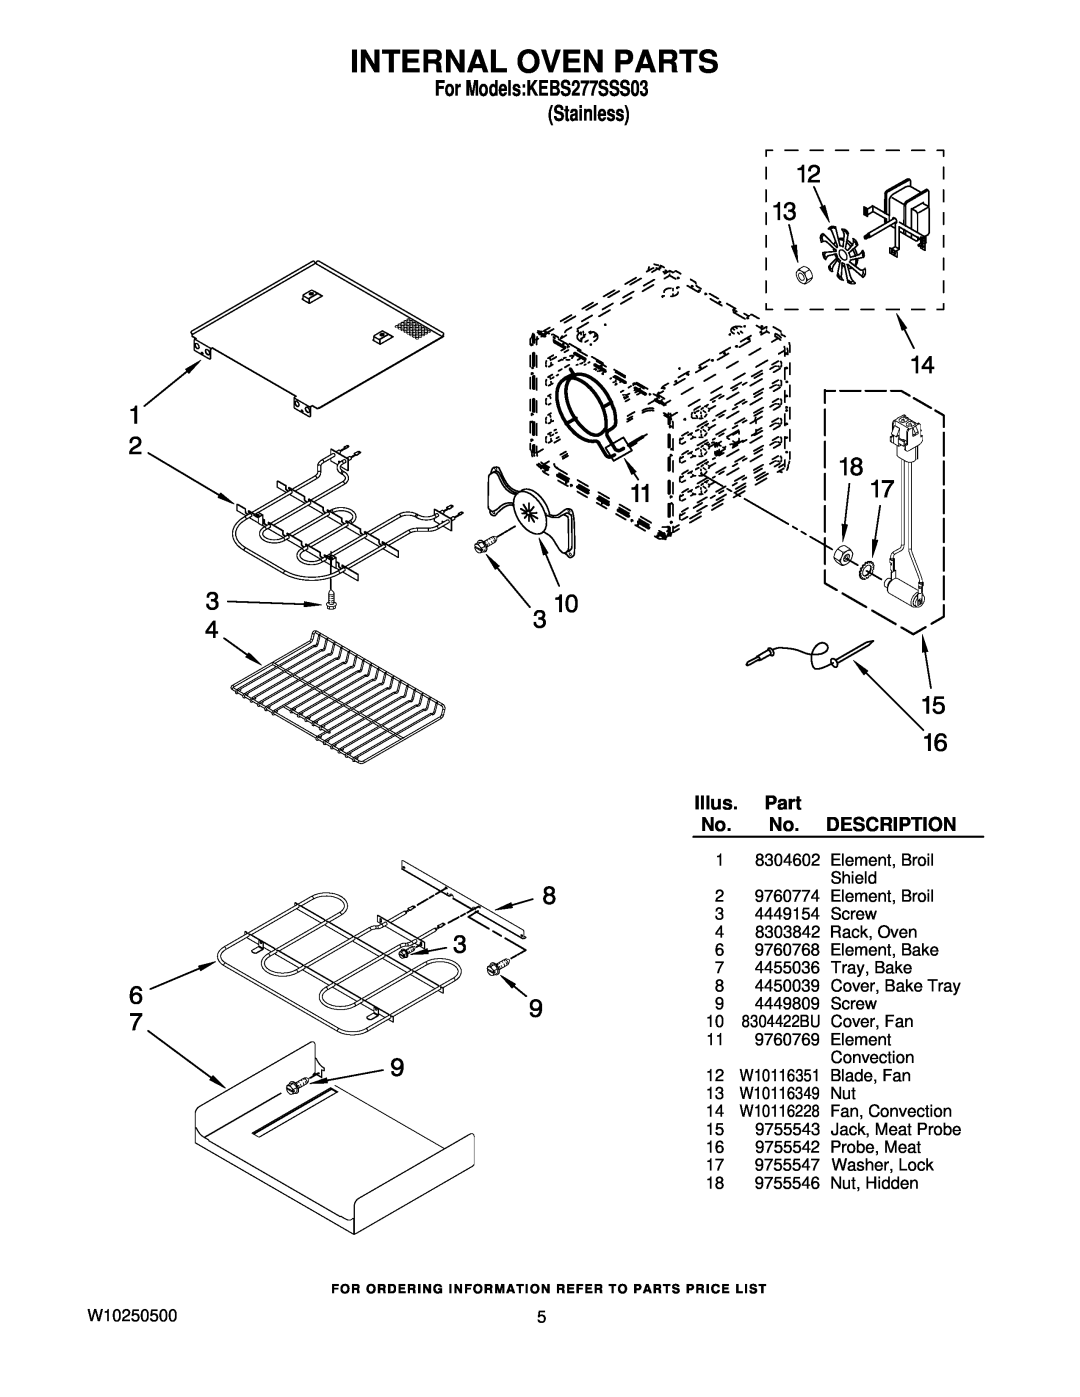 KitchenAid KEBS277SSS03 manual Internal Oven Parts, Illus, Description, 8304422BU, W10116351, W10116349, W10116228 